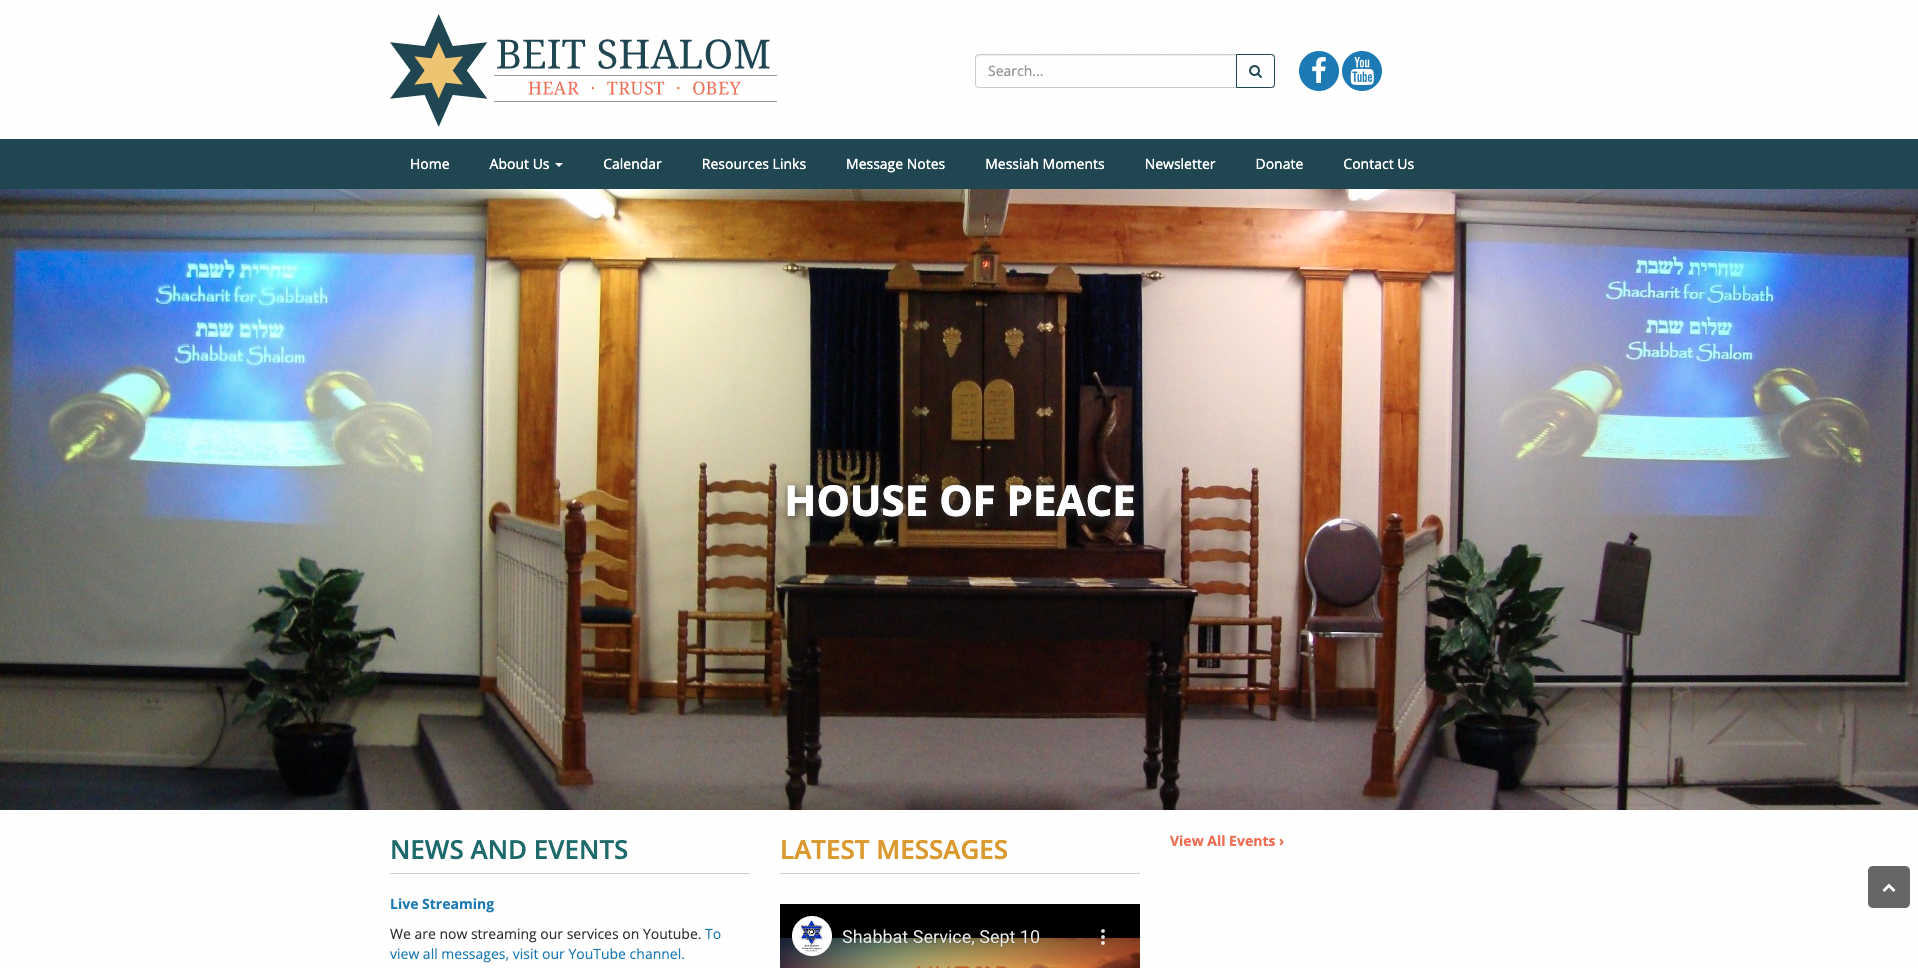 Beit Shalom